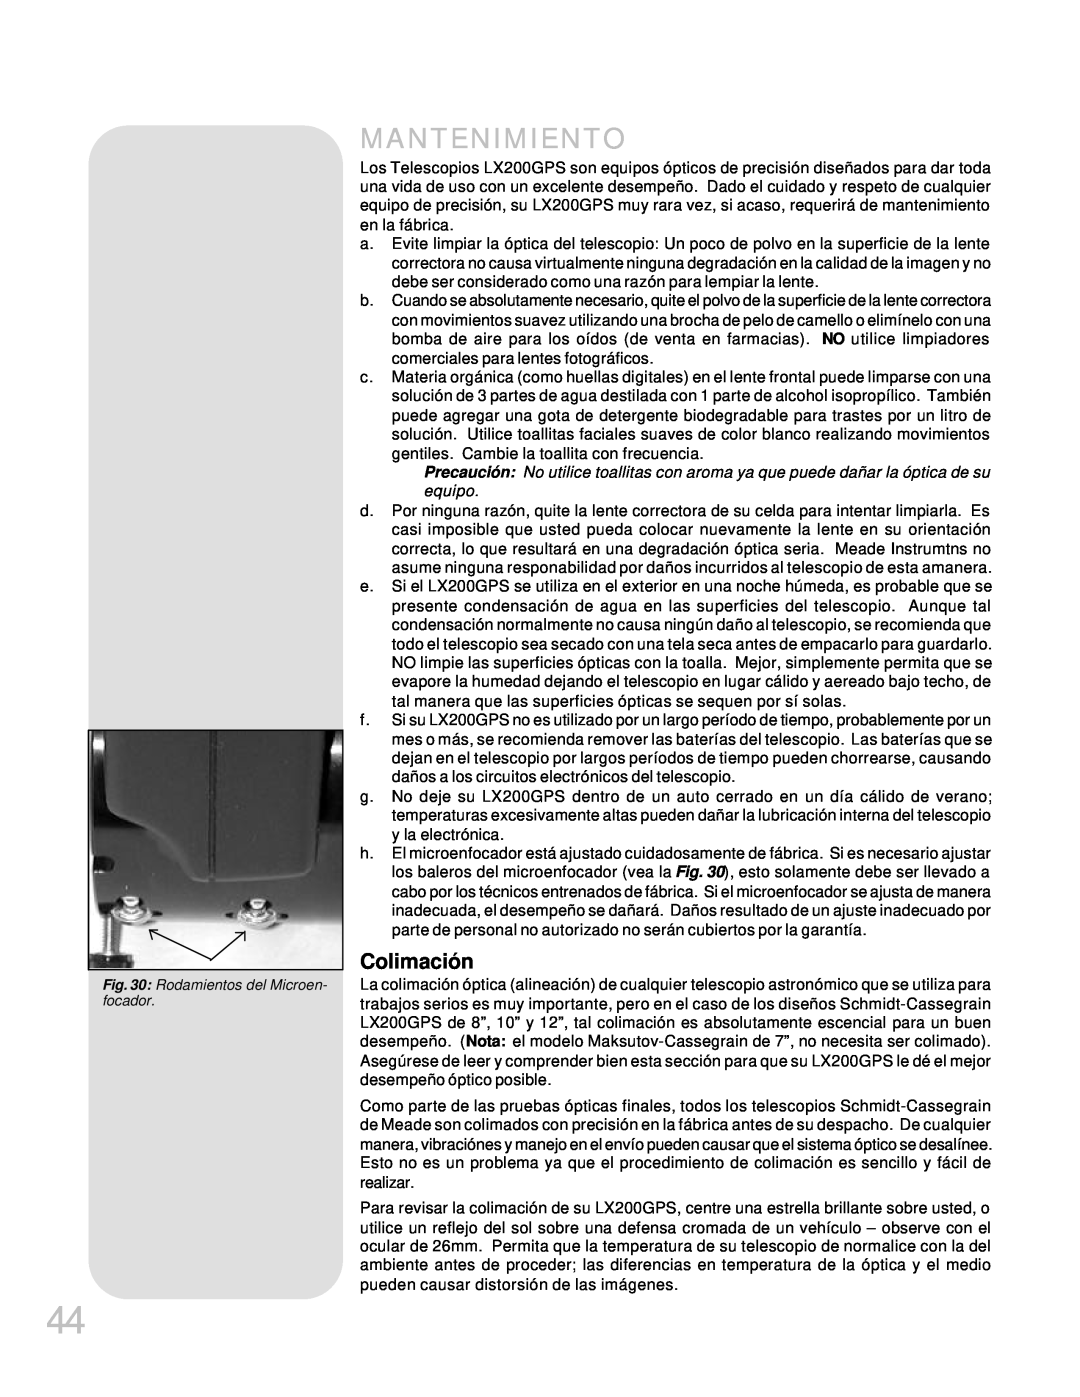 Meade LX200GPS manual Mantenimiento, Colimación 